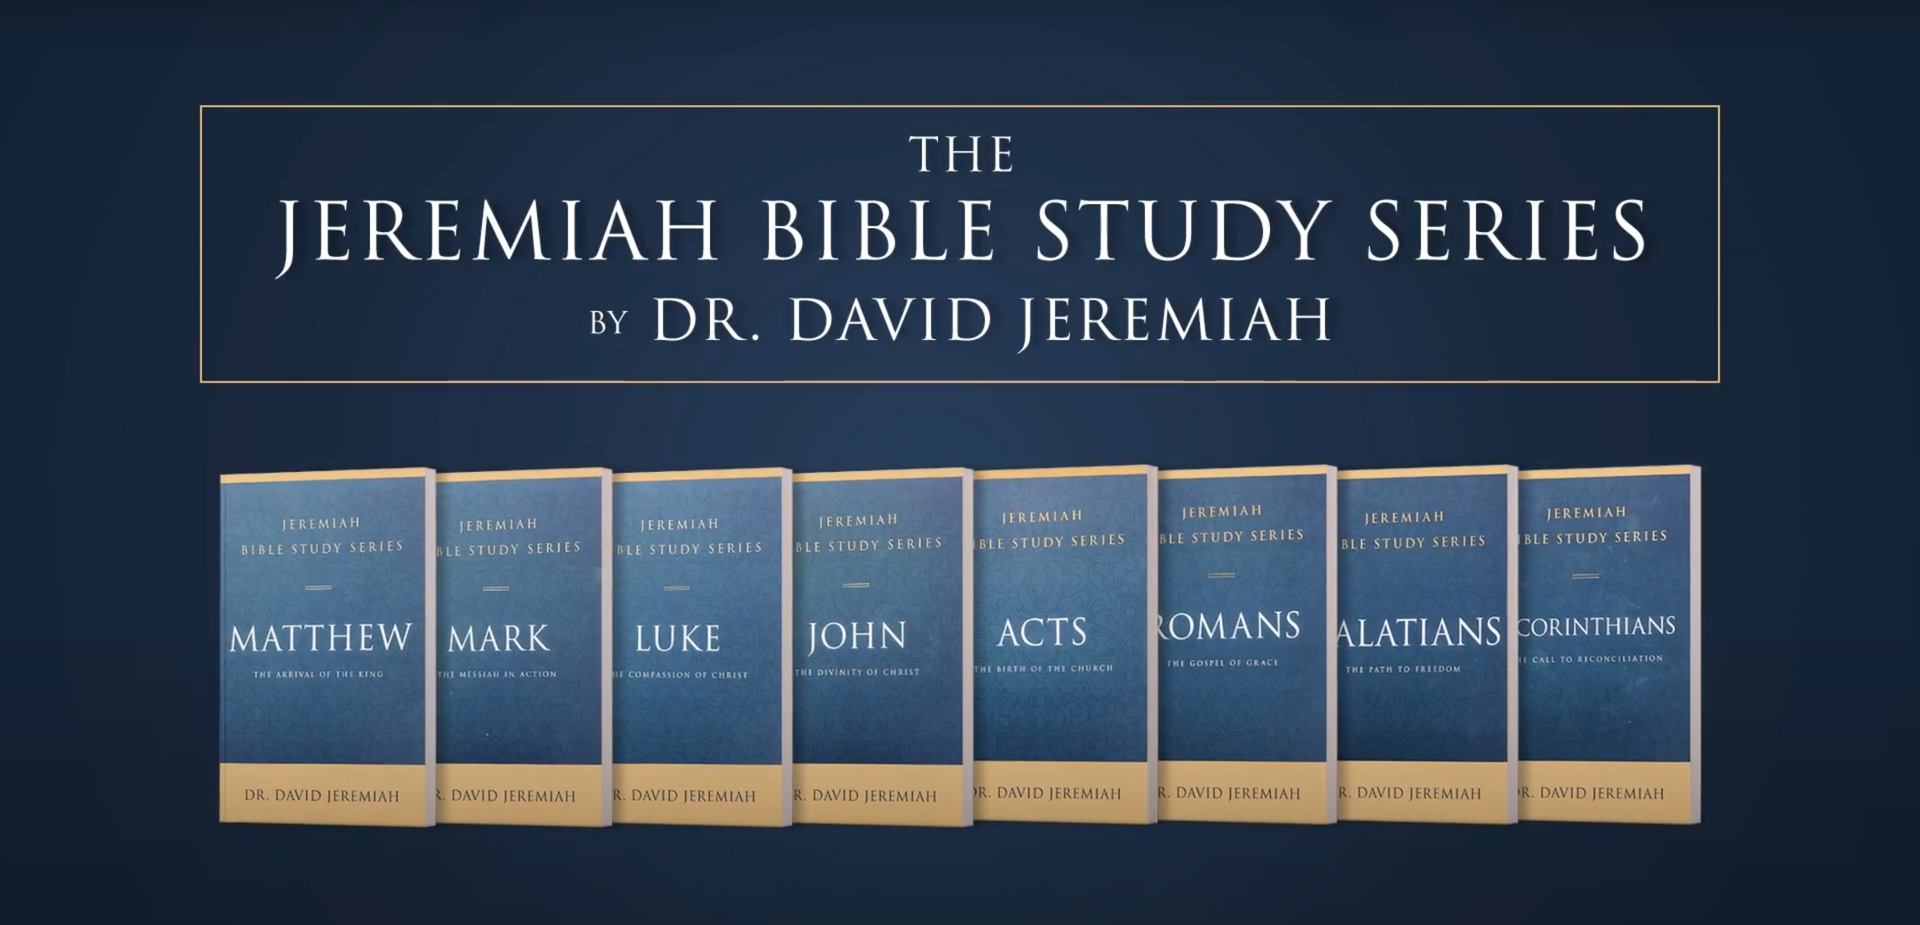 The Jeremiah Bible Study Series by Dr. David Jeremiah